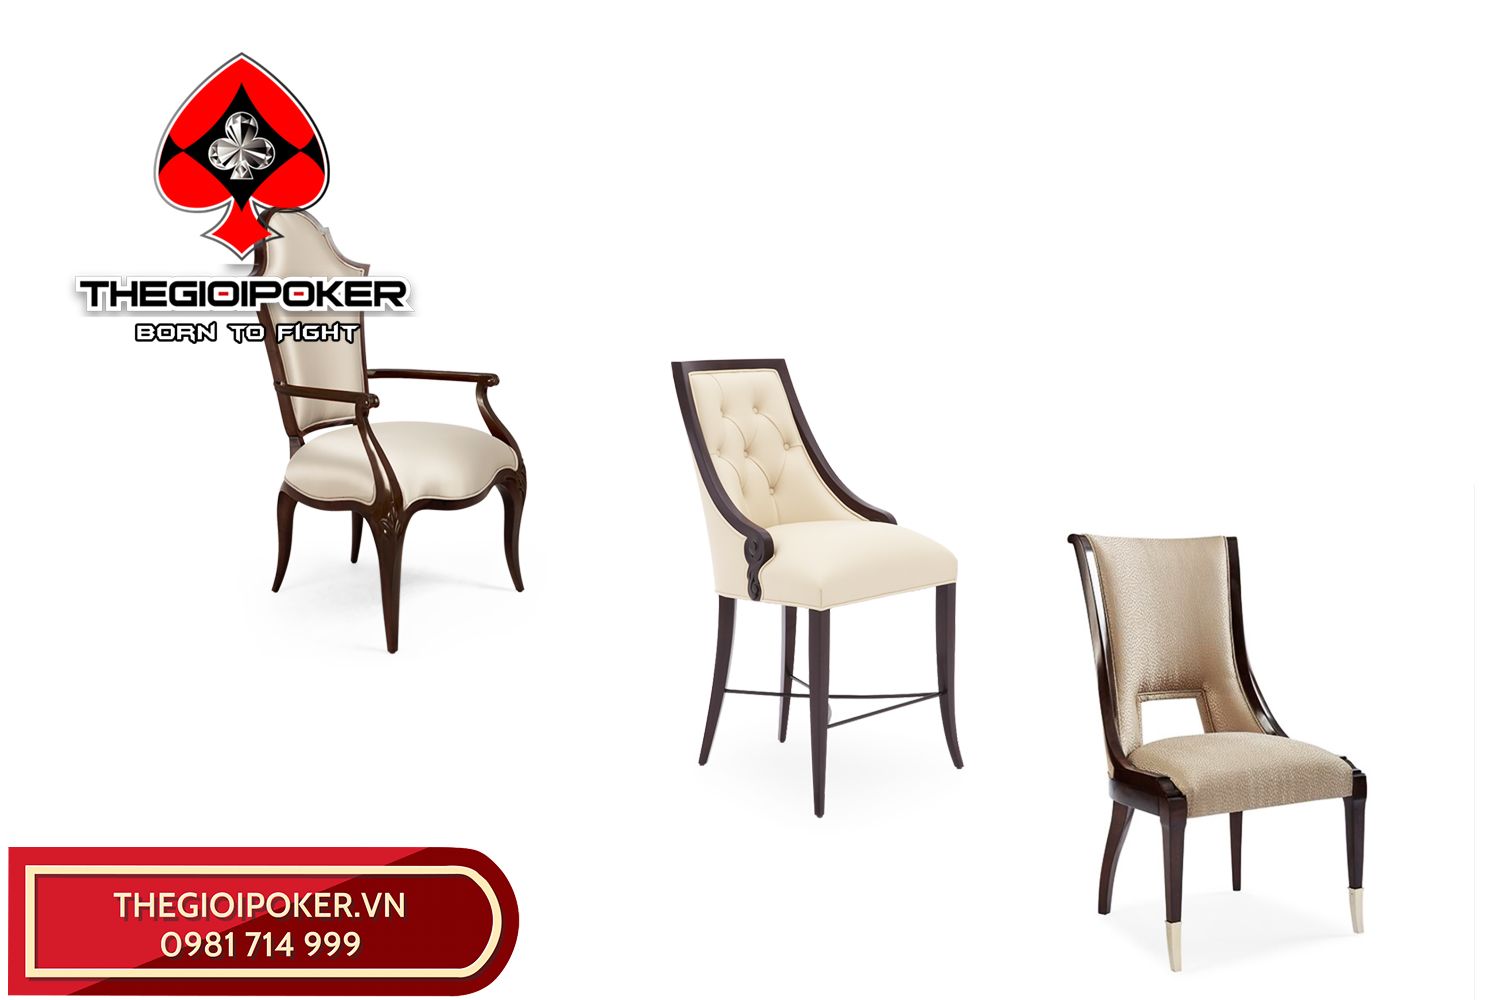 Một số mẫu ghế thông dụng dành cho bàn poker